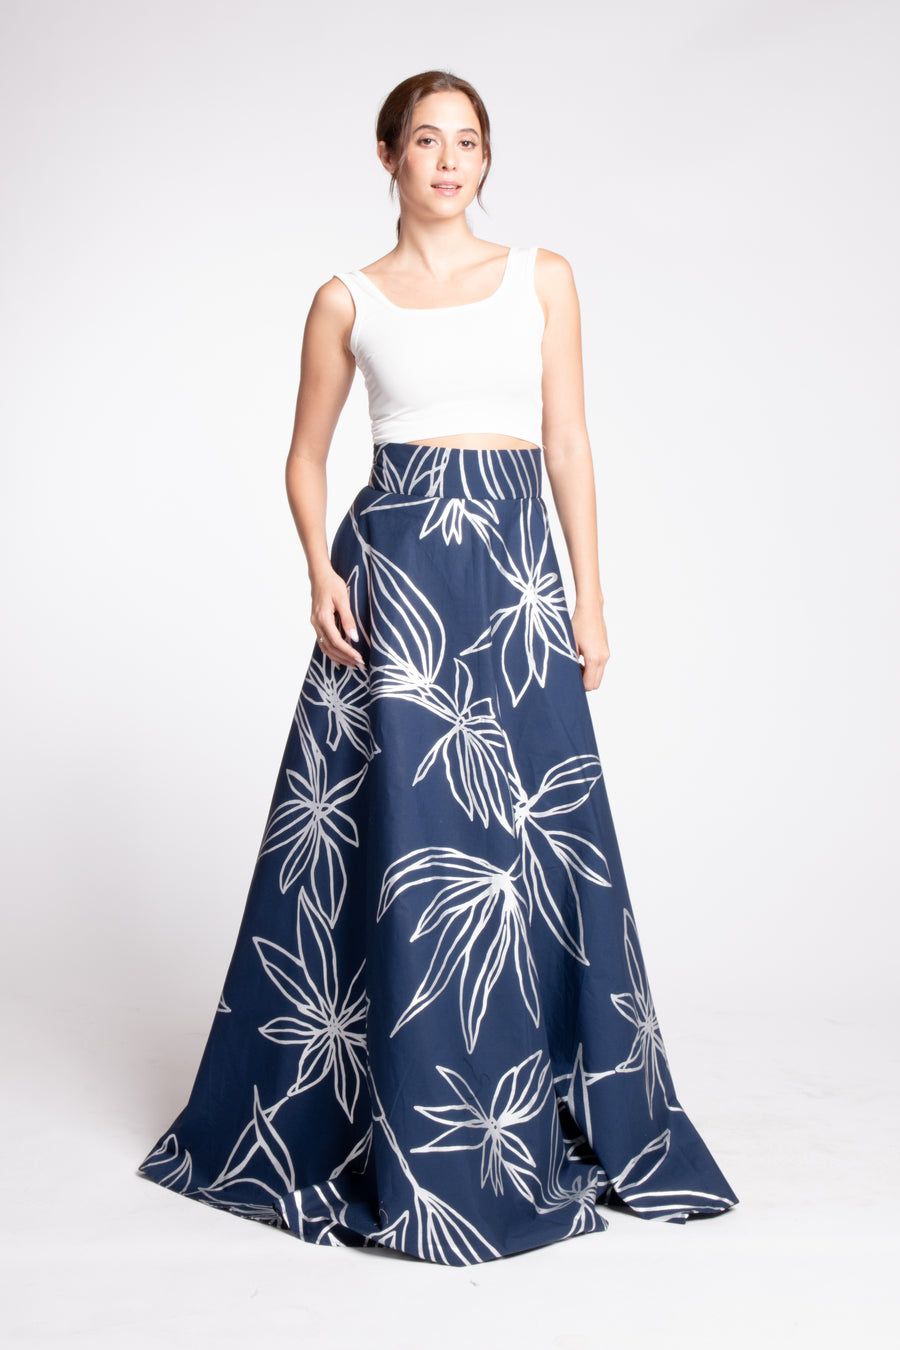 BENNET Painterly Floral Ball Skirt (NAVY)